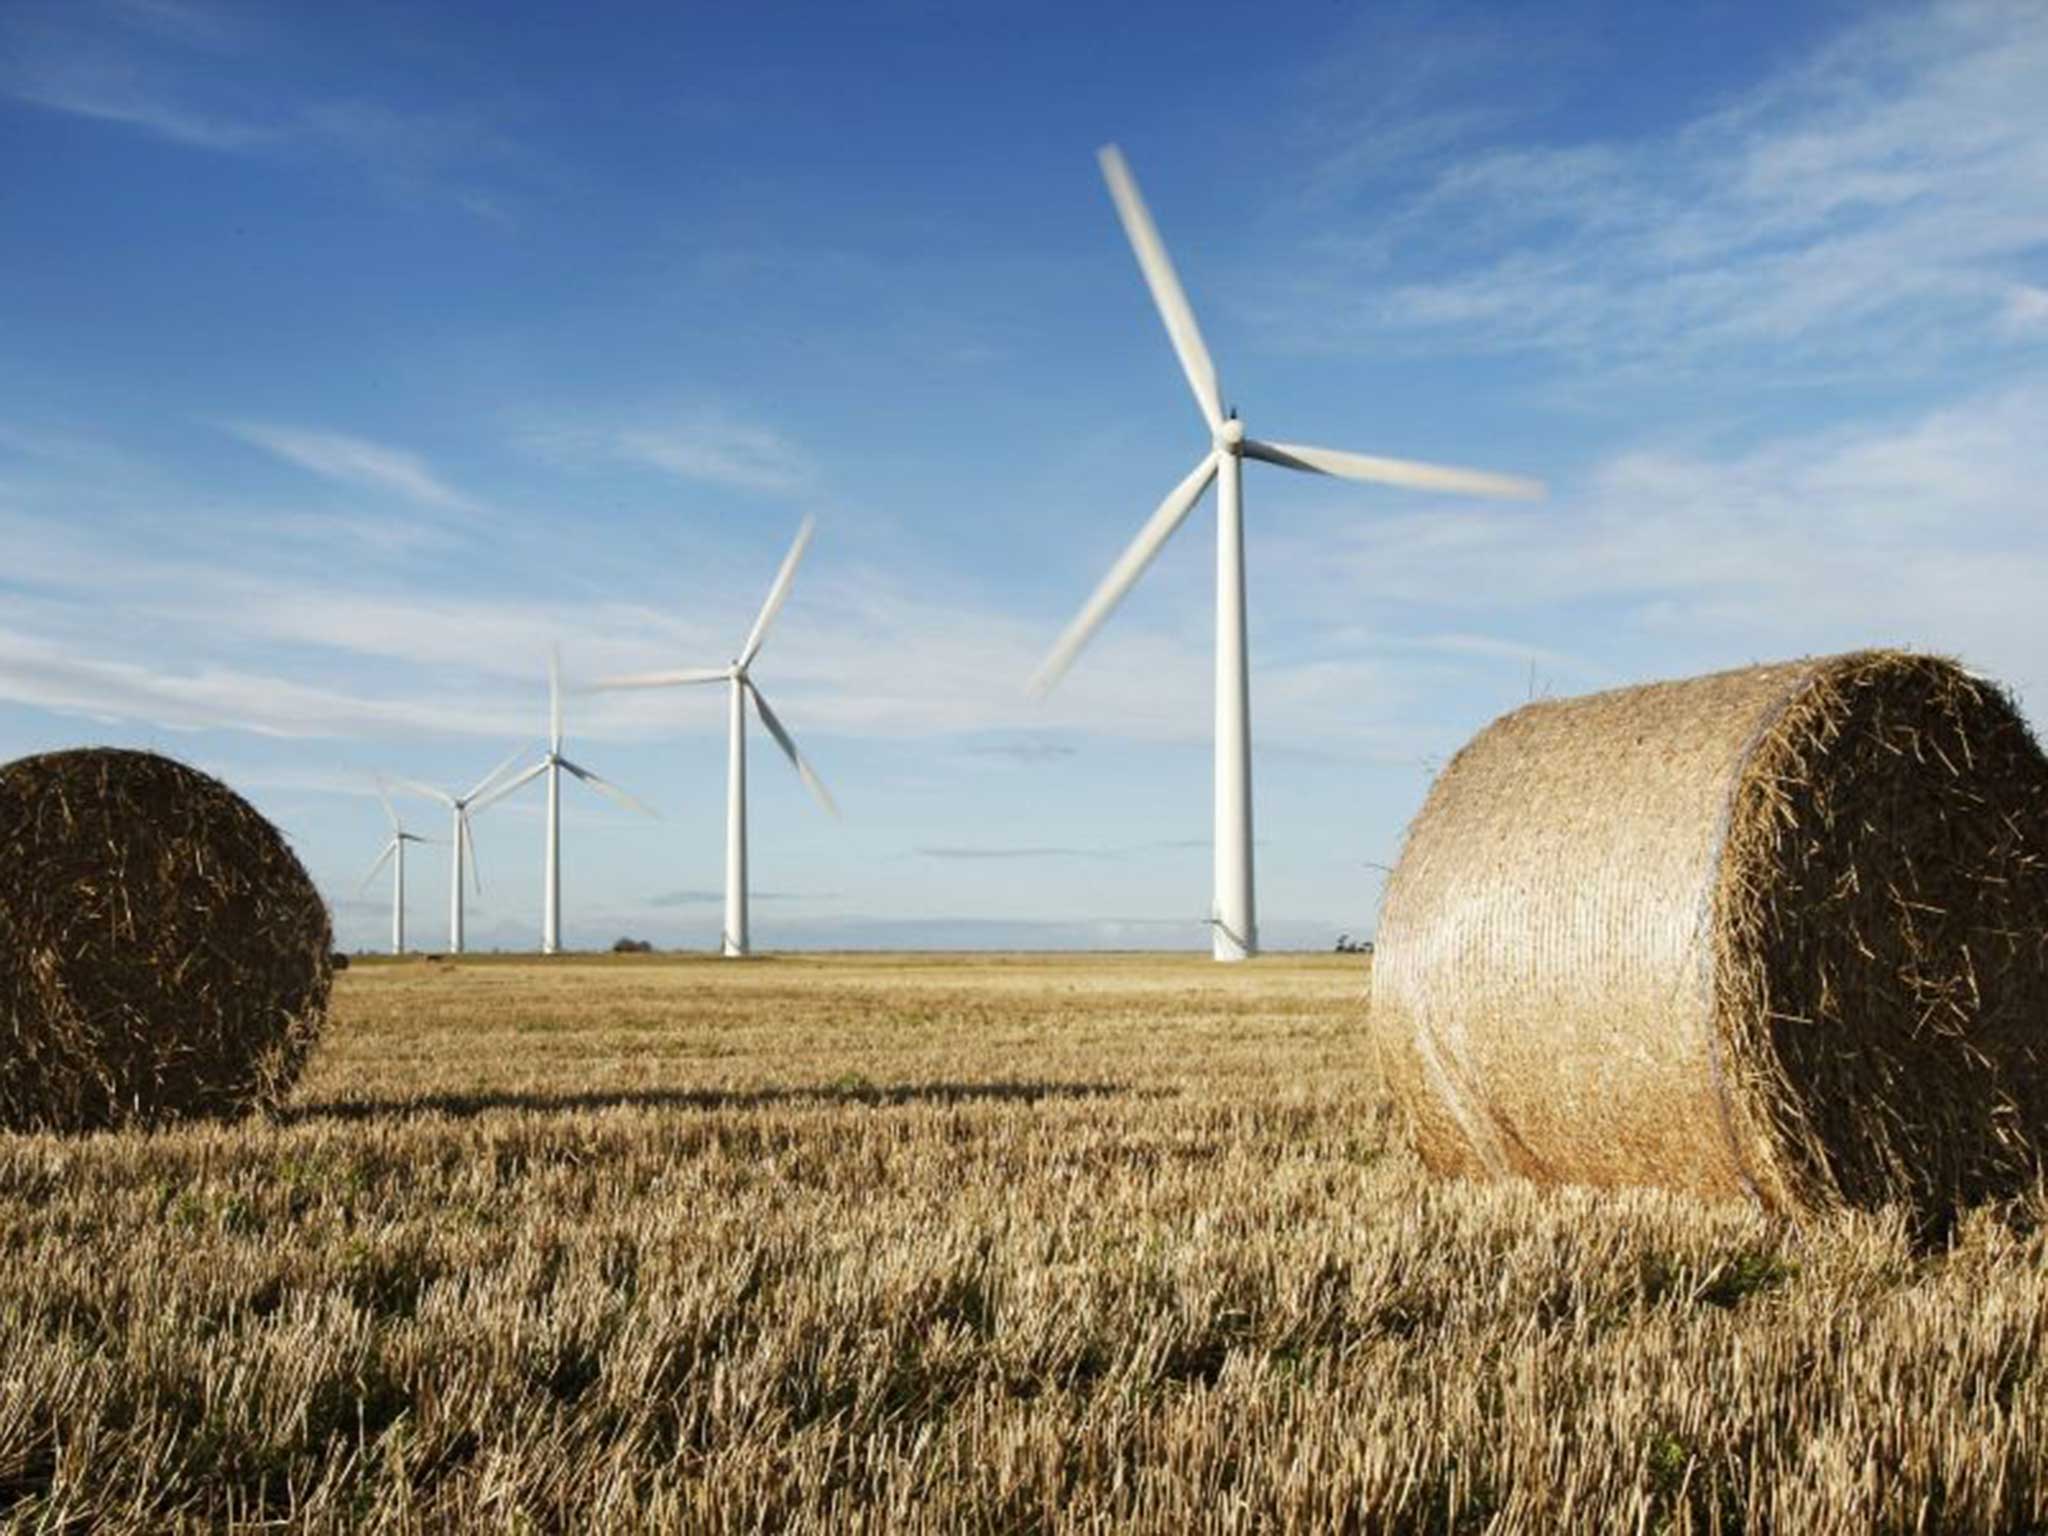 Westmill Wind Farm near Swindon powers 2,500 homes